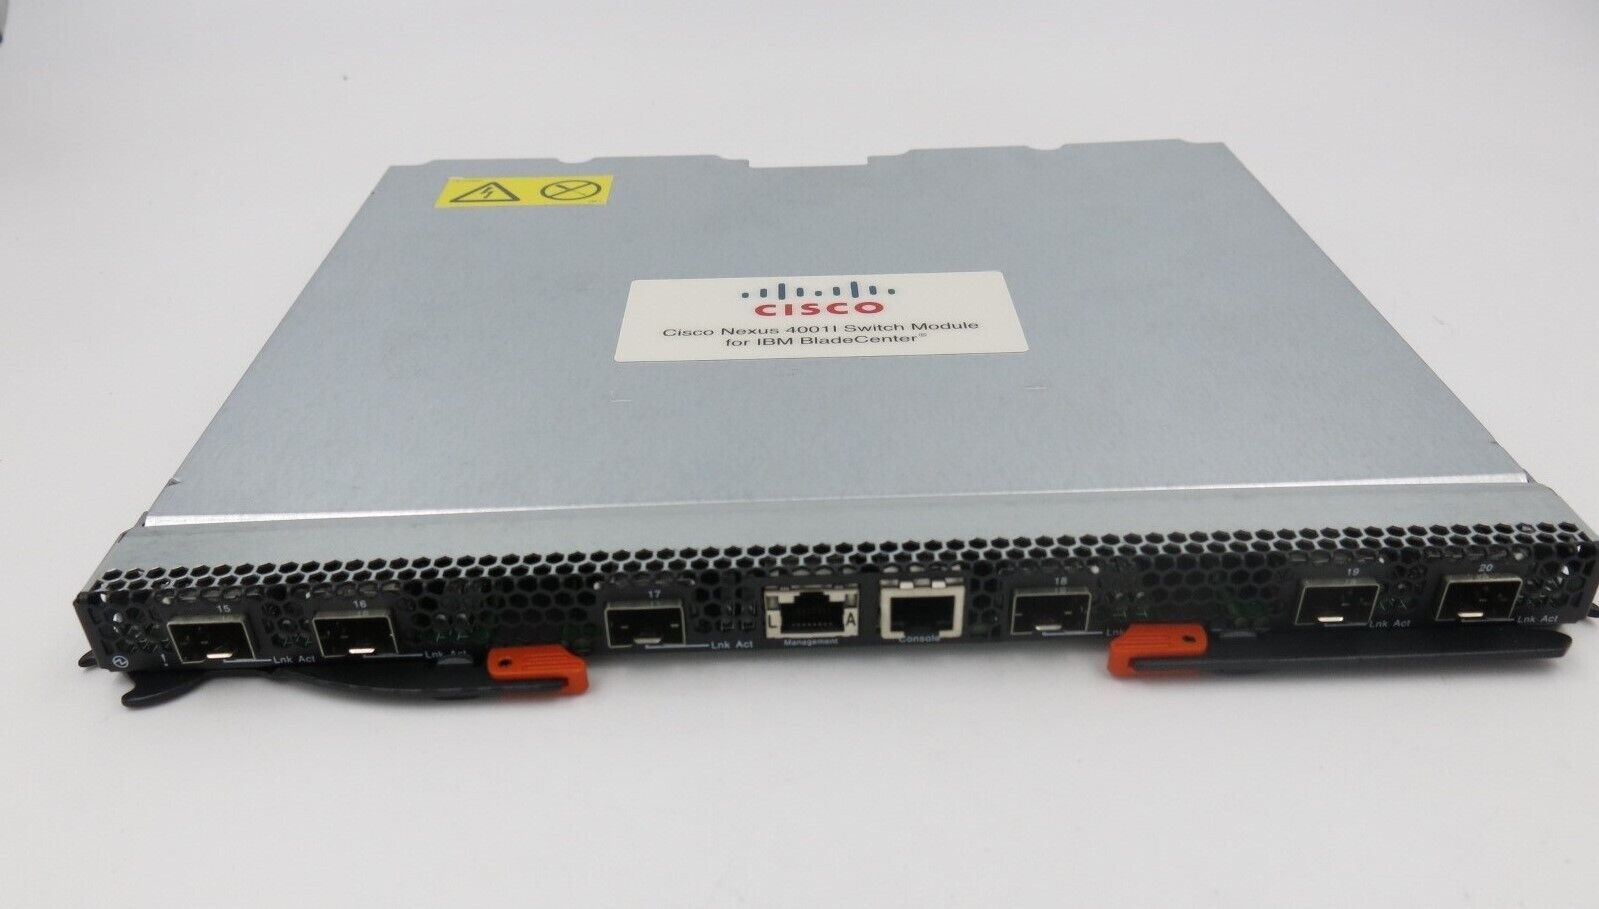 Cisco 46C9237 Nexus 4001l Switch Module for IBM BladeCenter N4K-4001I-XPX - NEW